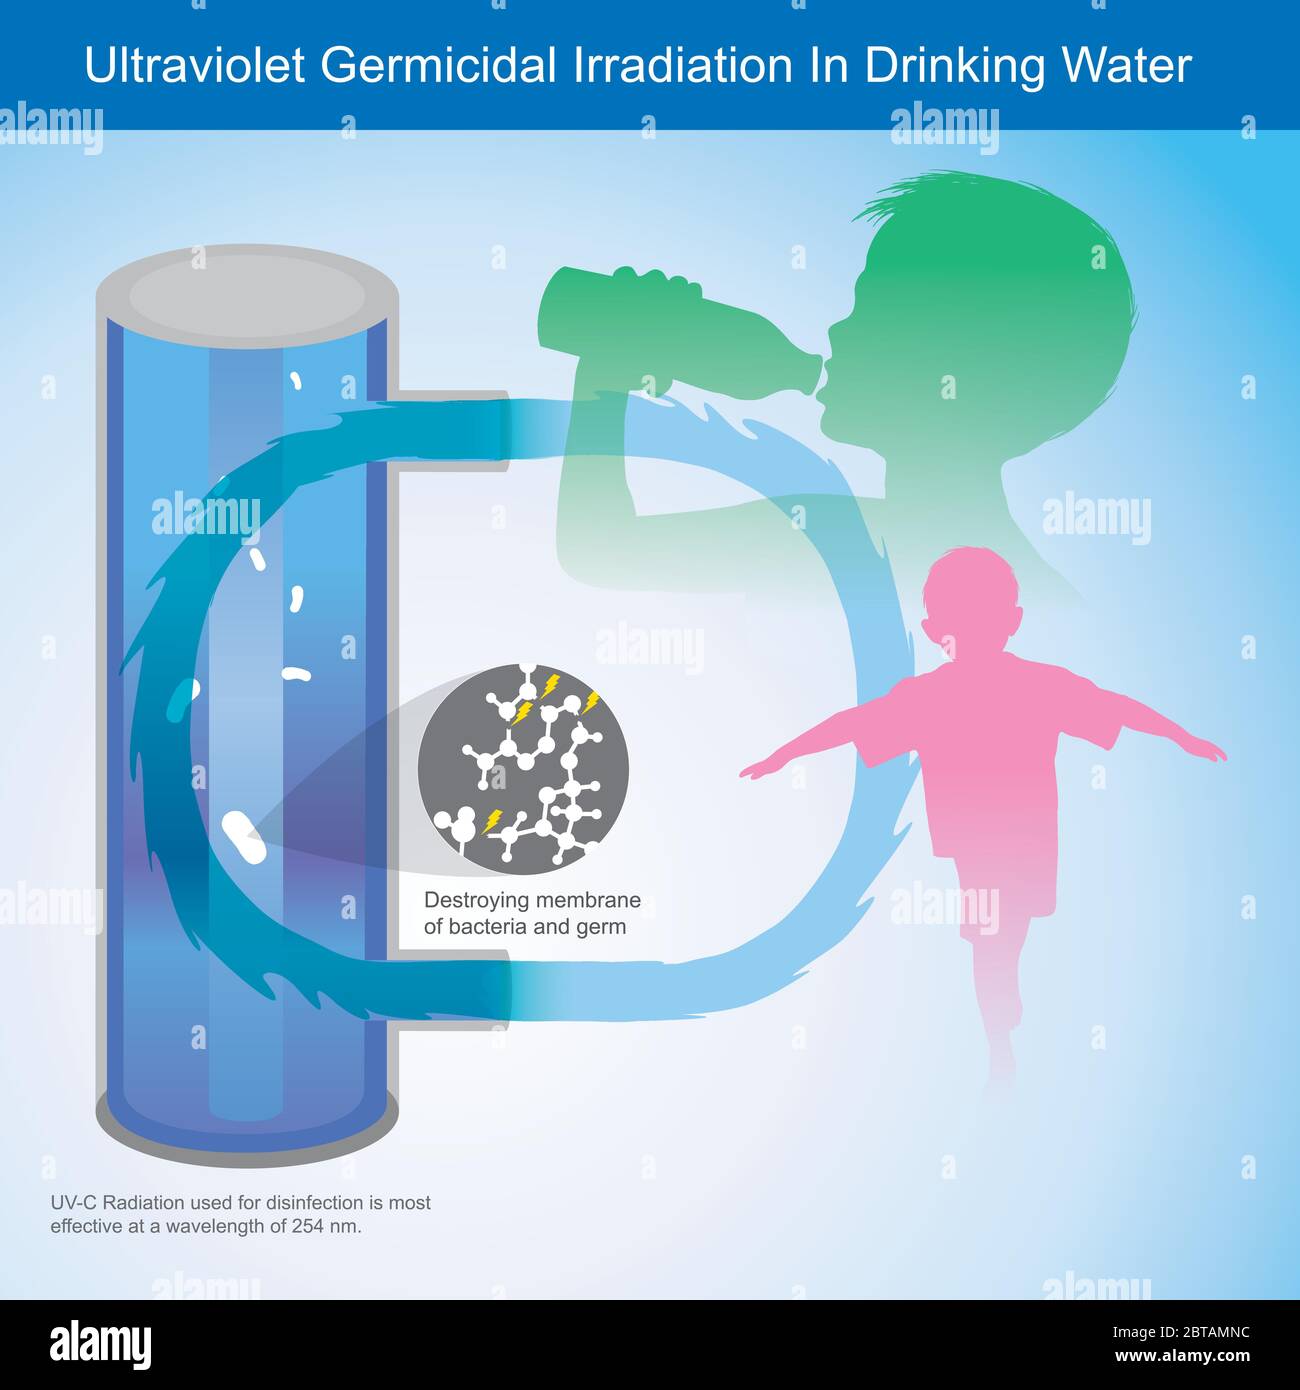 Irradiation germicide ultraviolette dans l'eau potable. Illustration Expliquez la lumière ultraviolette (UV-C) il peut tuer la membrane des bactéries Illustration de Vecteur